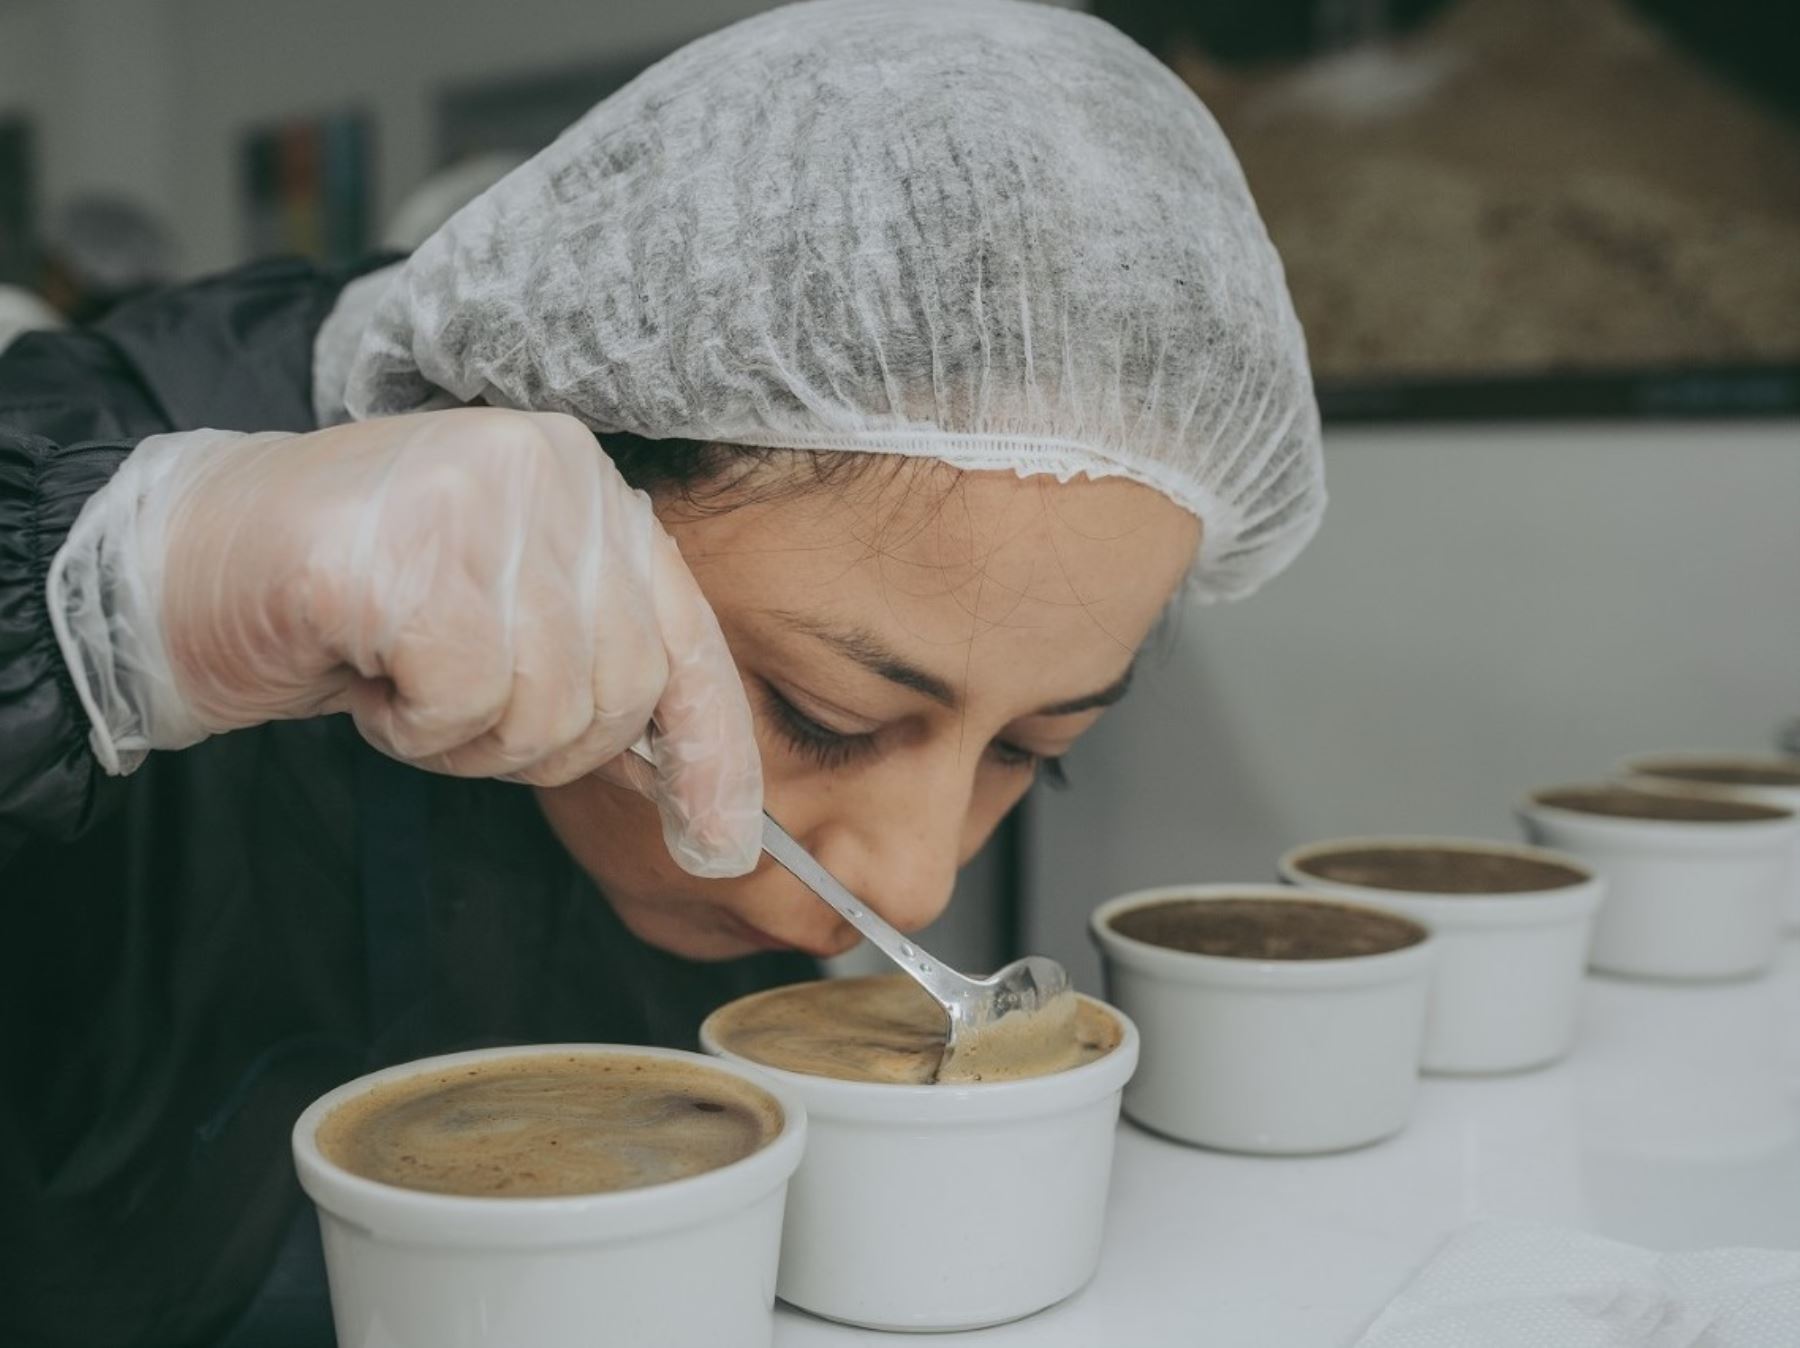 Un total de 36 variedades de café de seis regiones compiten por ser el mejor café especial peruano en la competencia Taza de Excelencia Perú 2020. ANDINA/Difusión